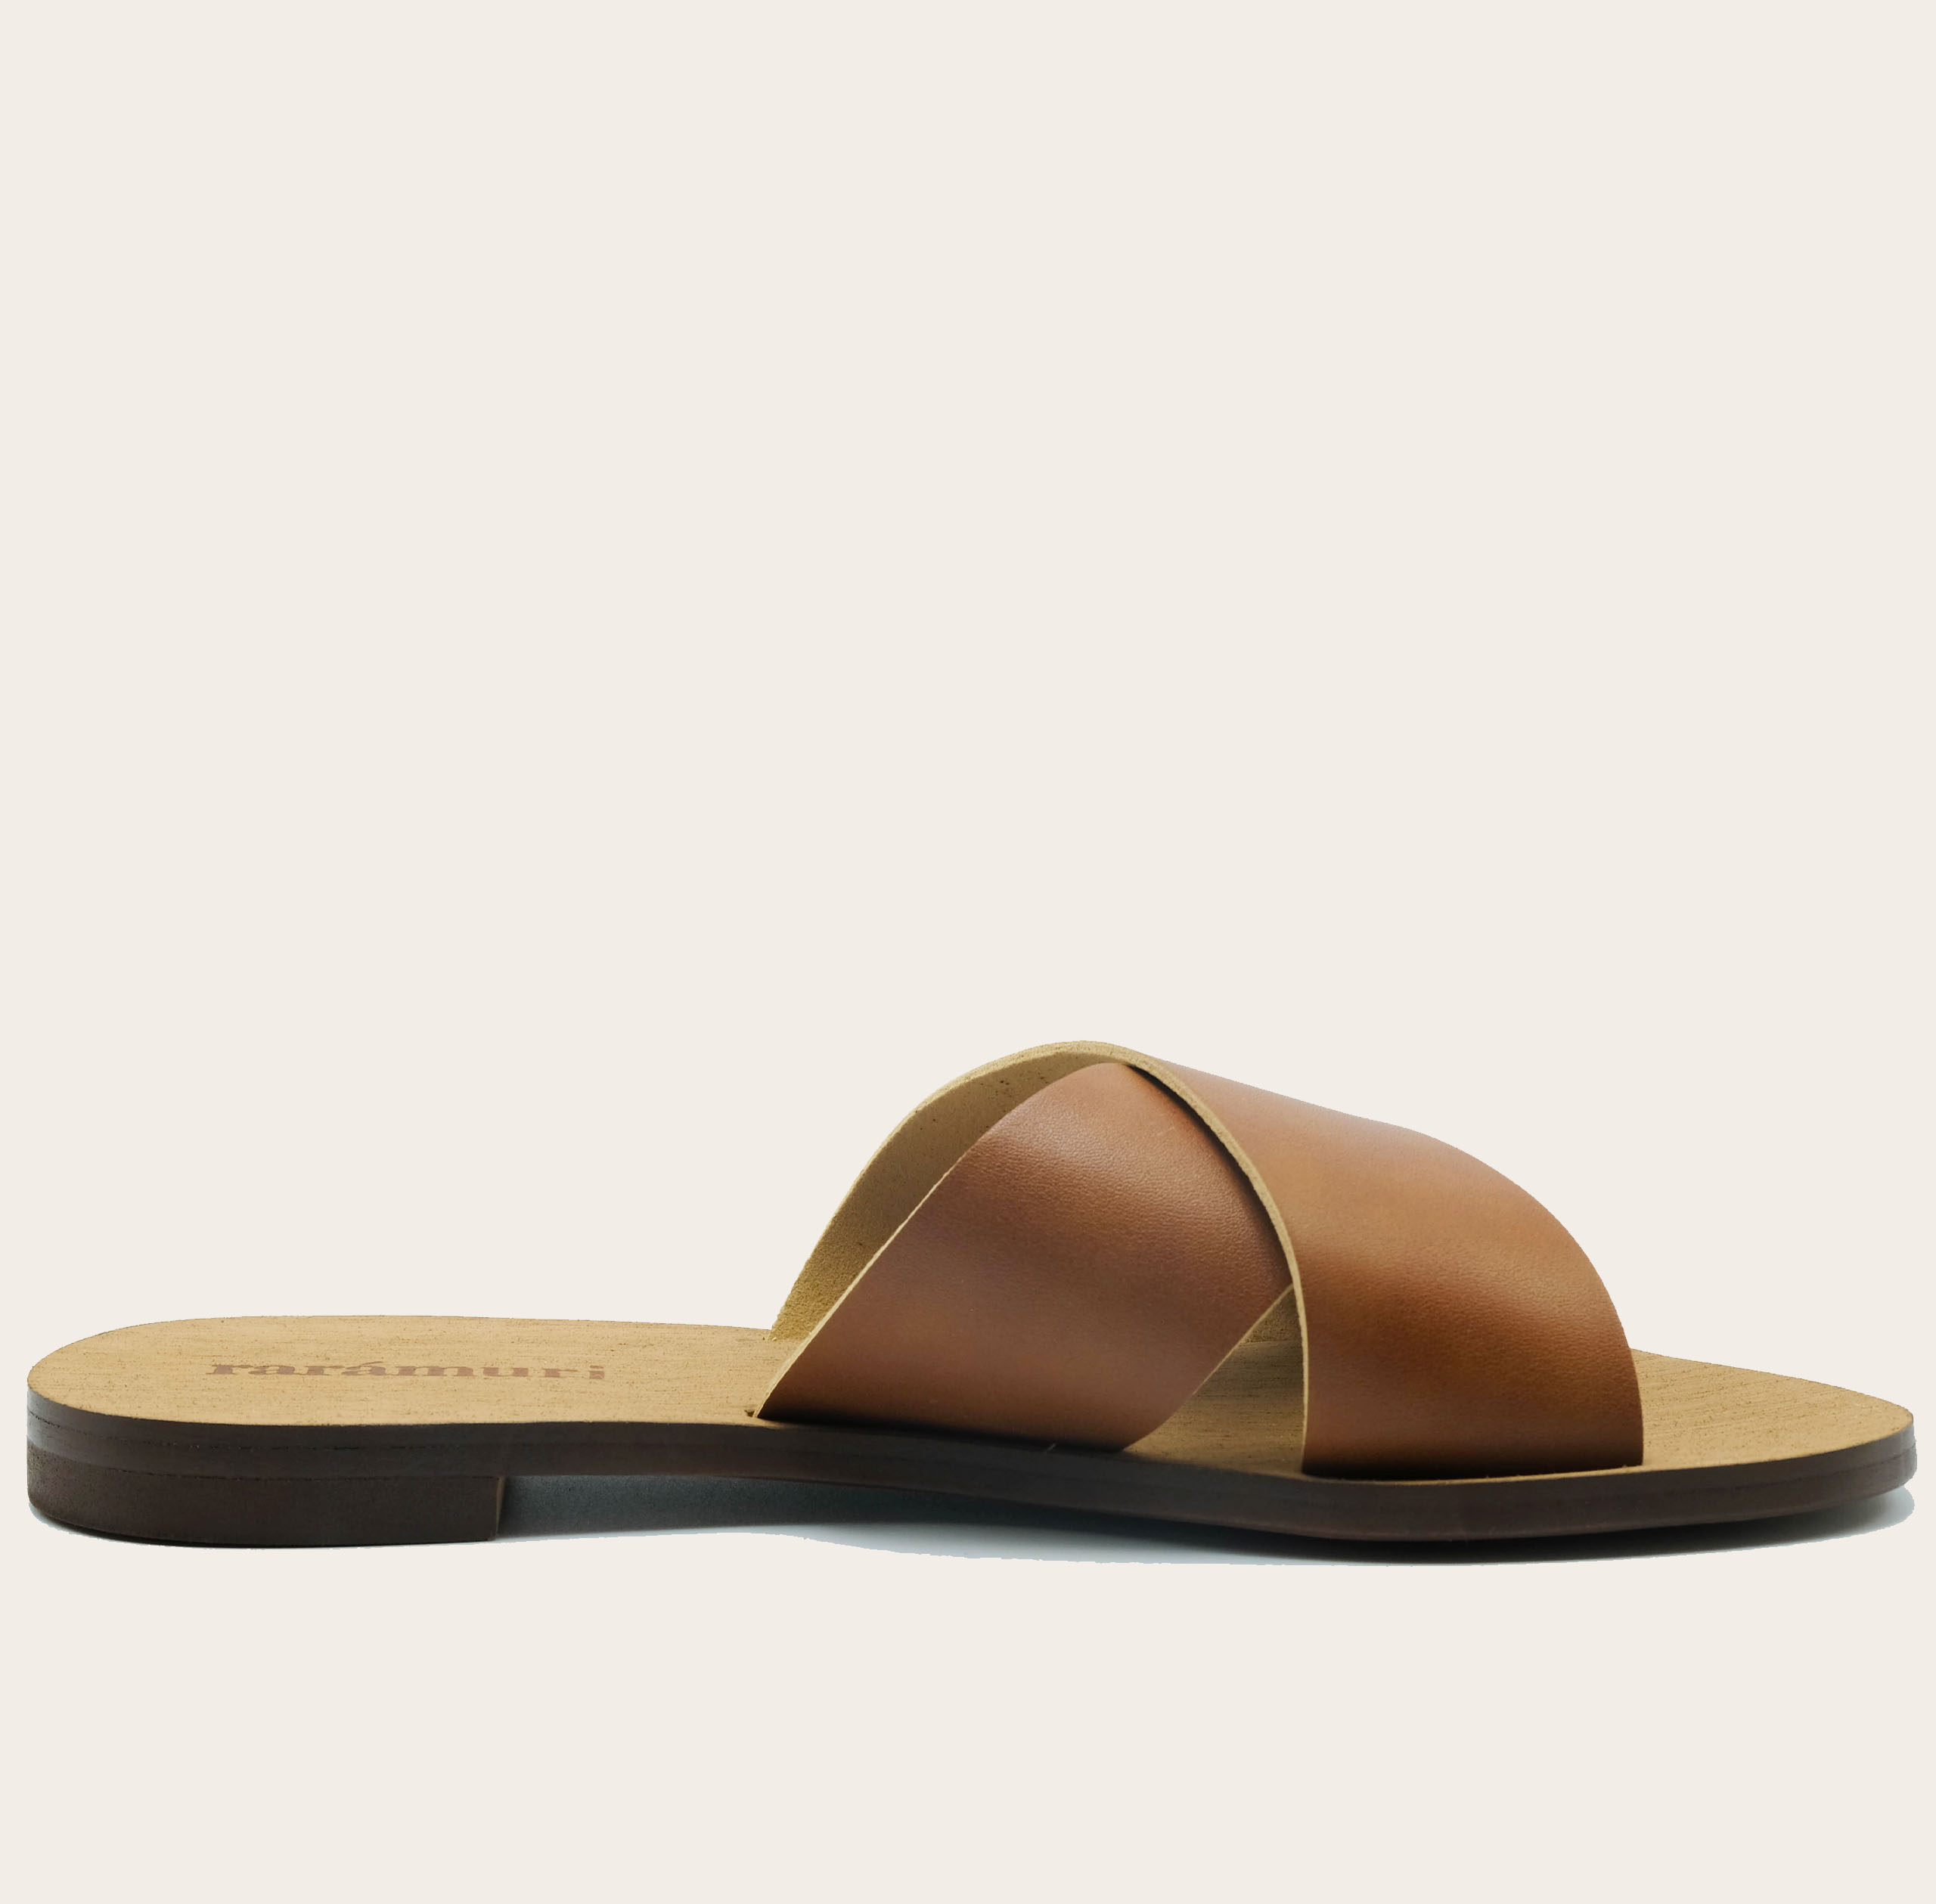 Palermo-zij-beige_slides-sandals-women-shoes-travel-sandals-vegan-raramuri